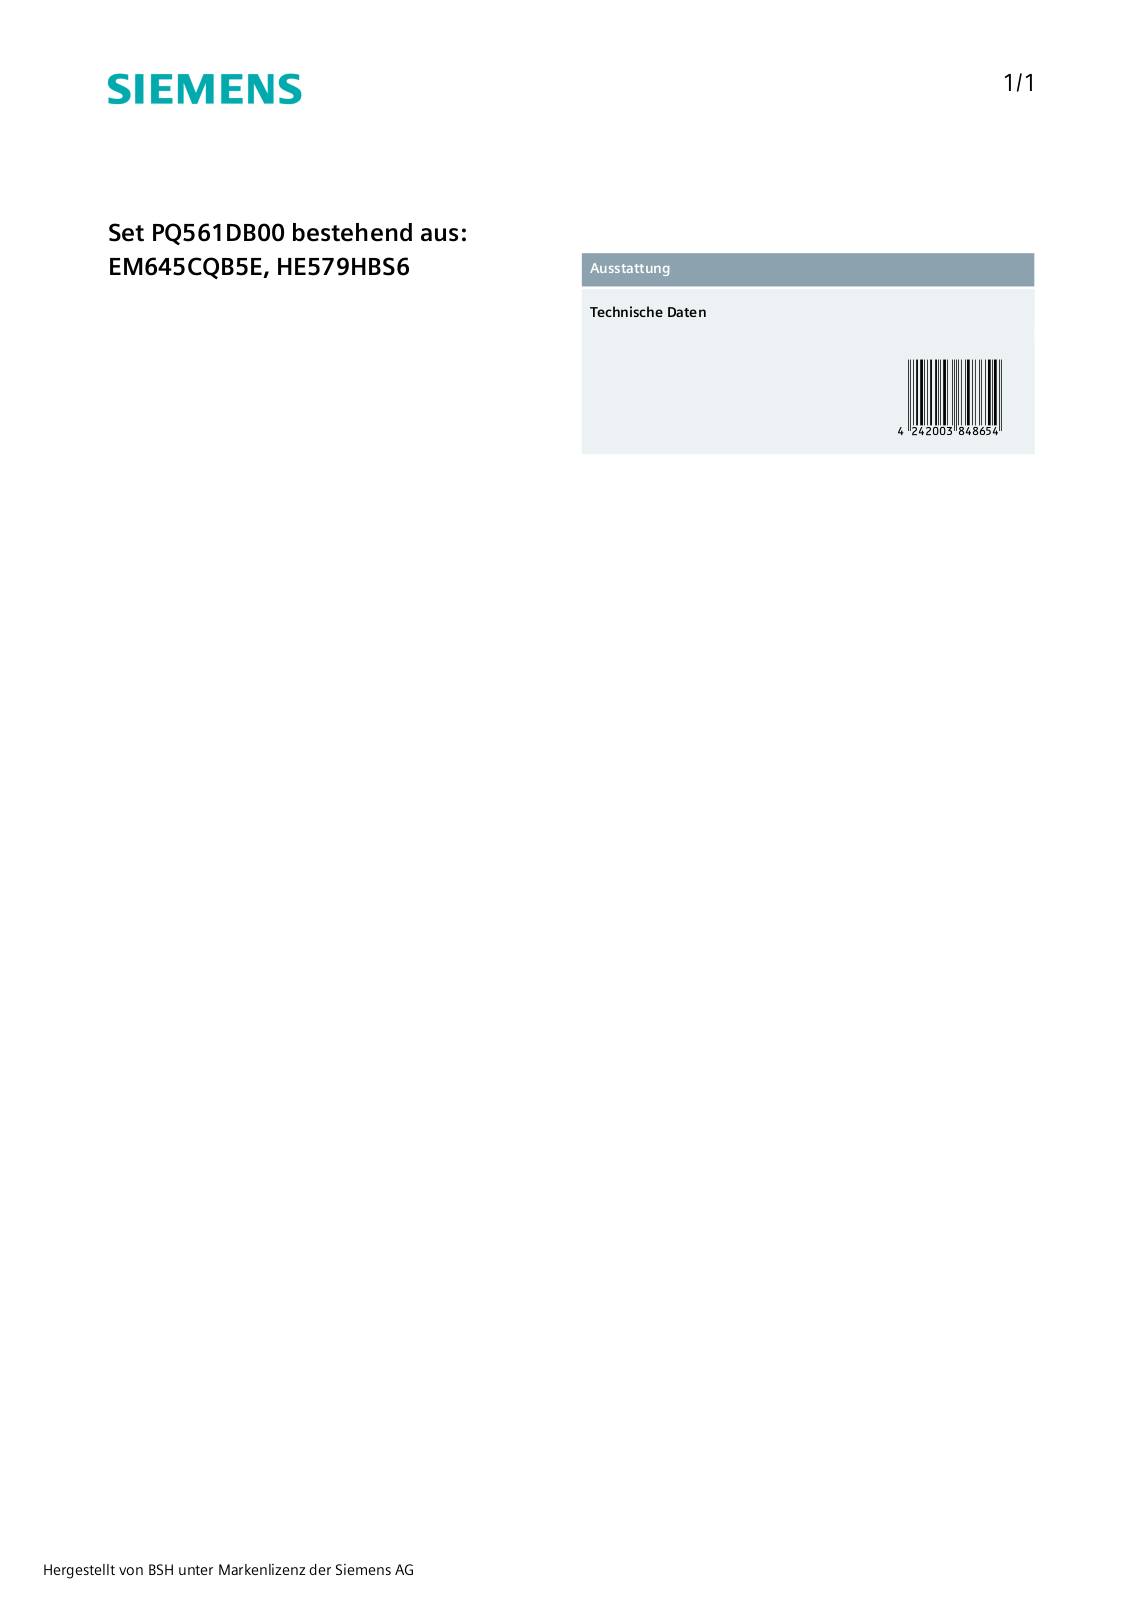 Siemens PQ561DB00 User Manual